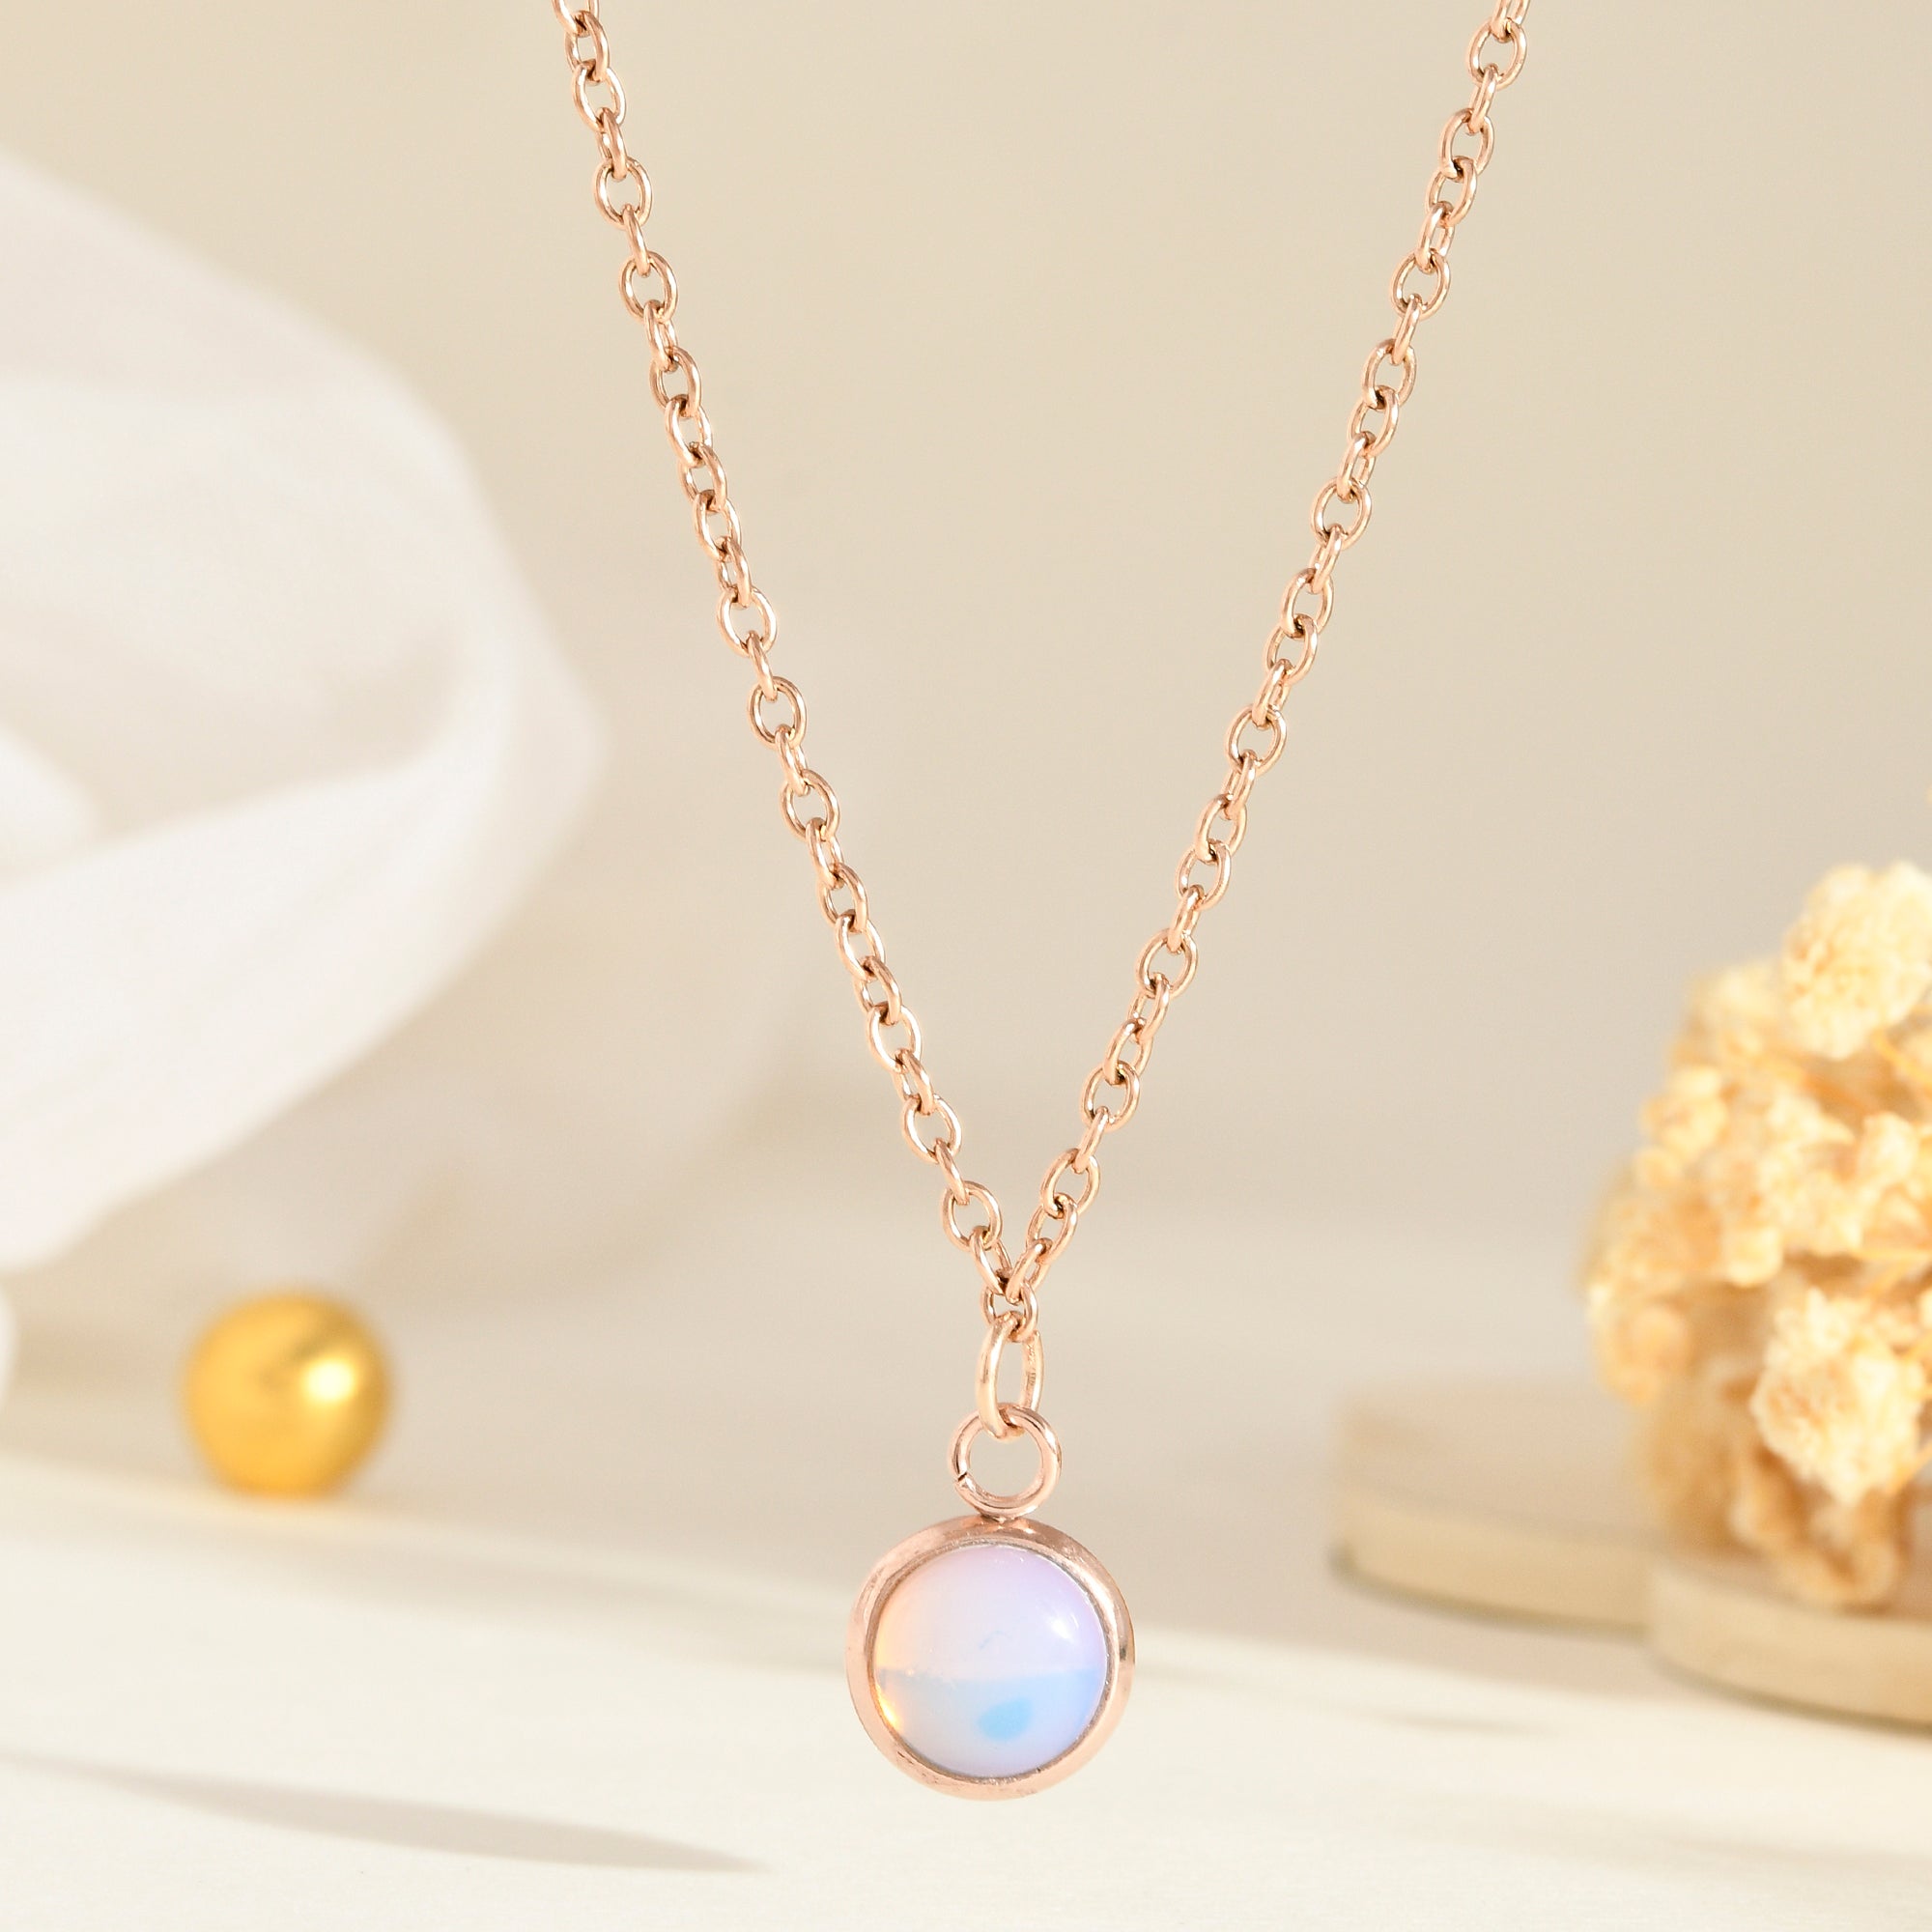 Opal pendant - WorldOfOorja